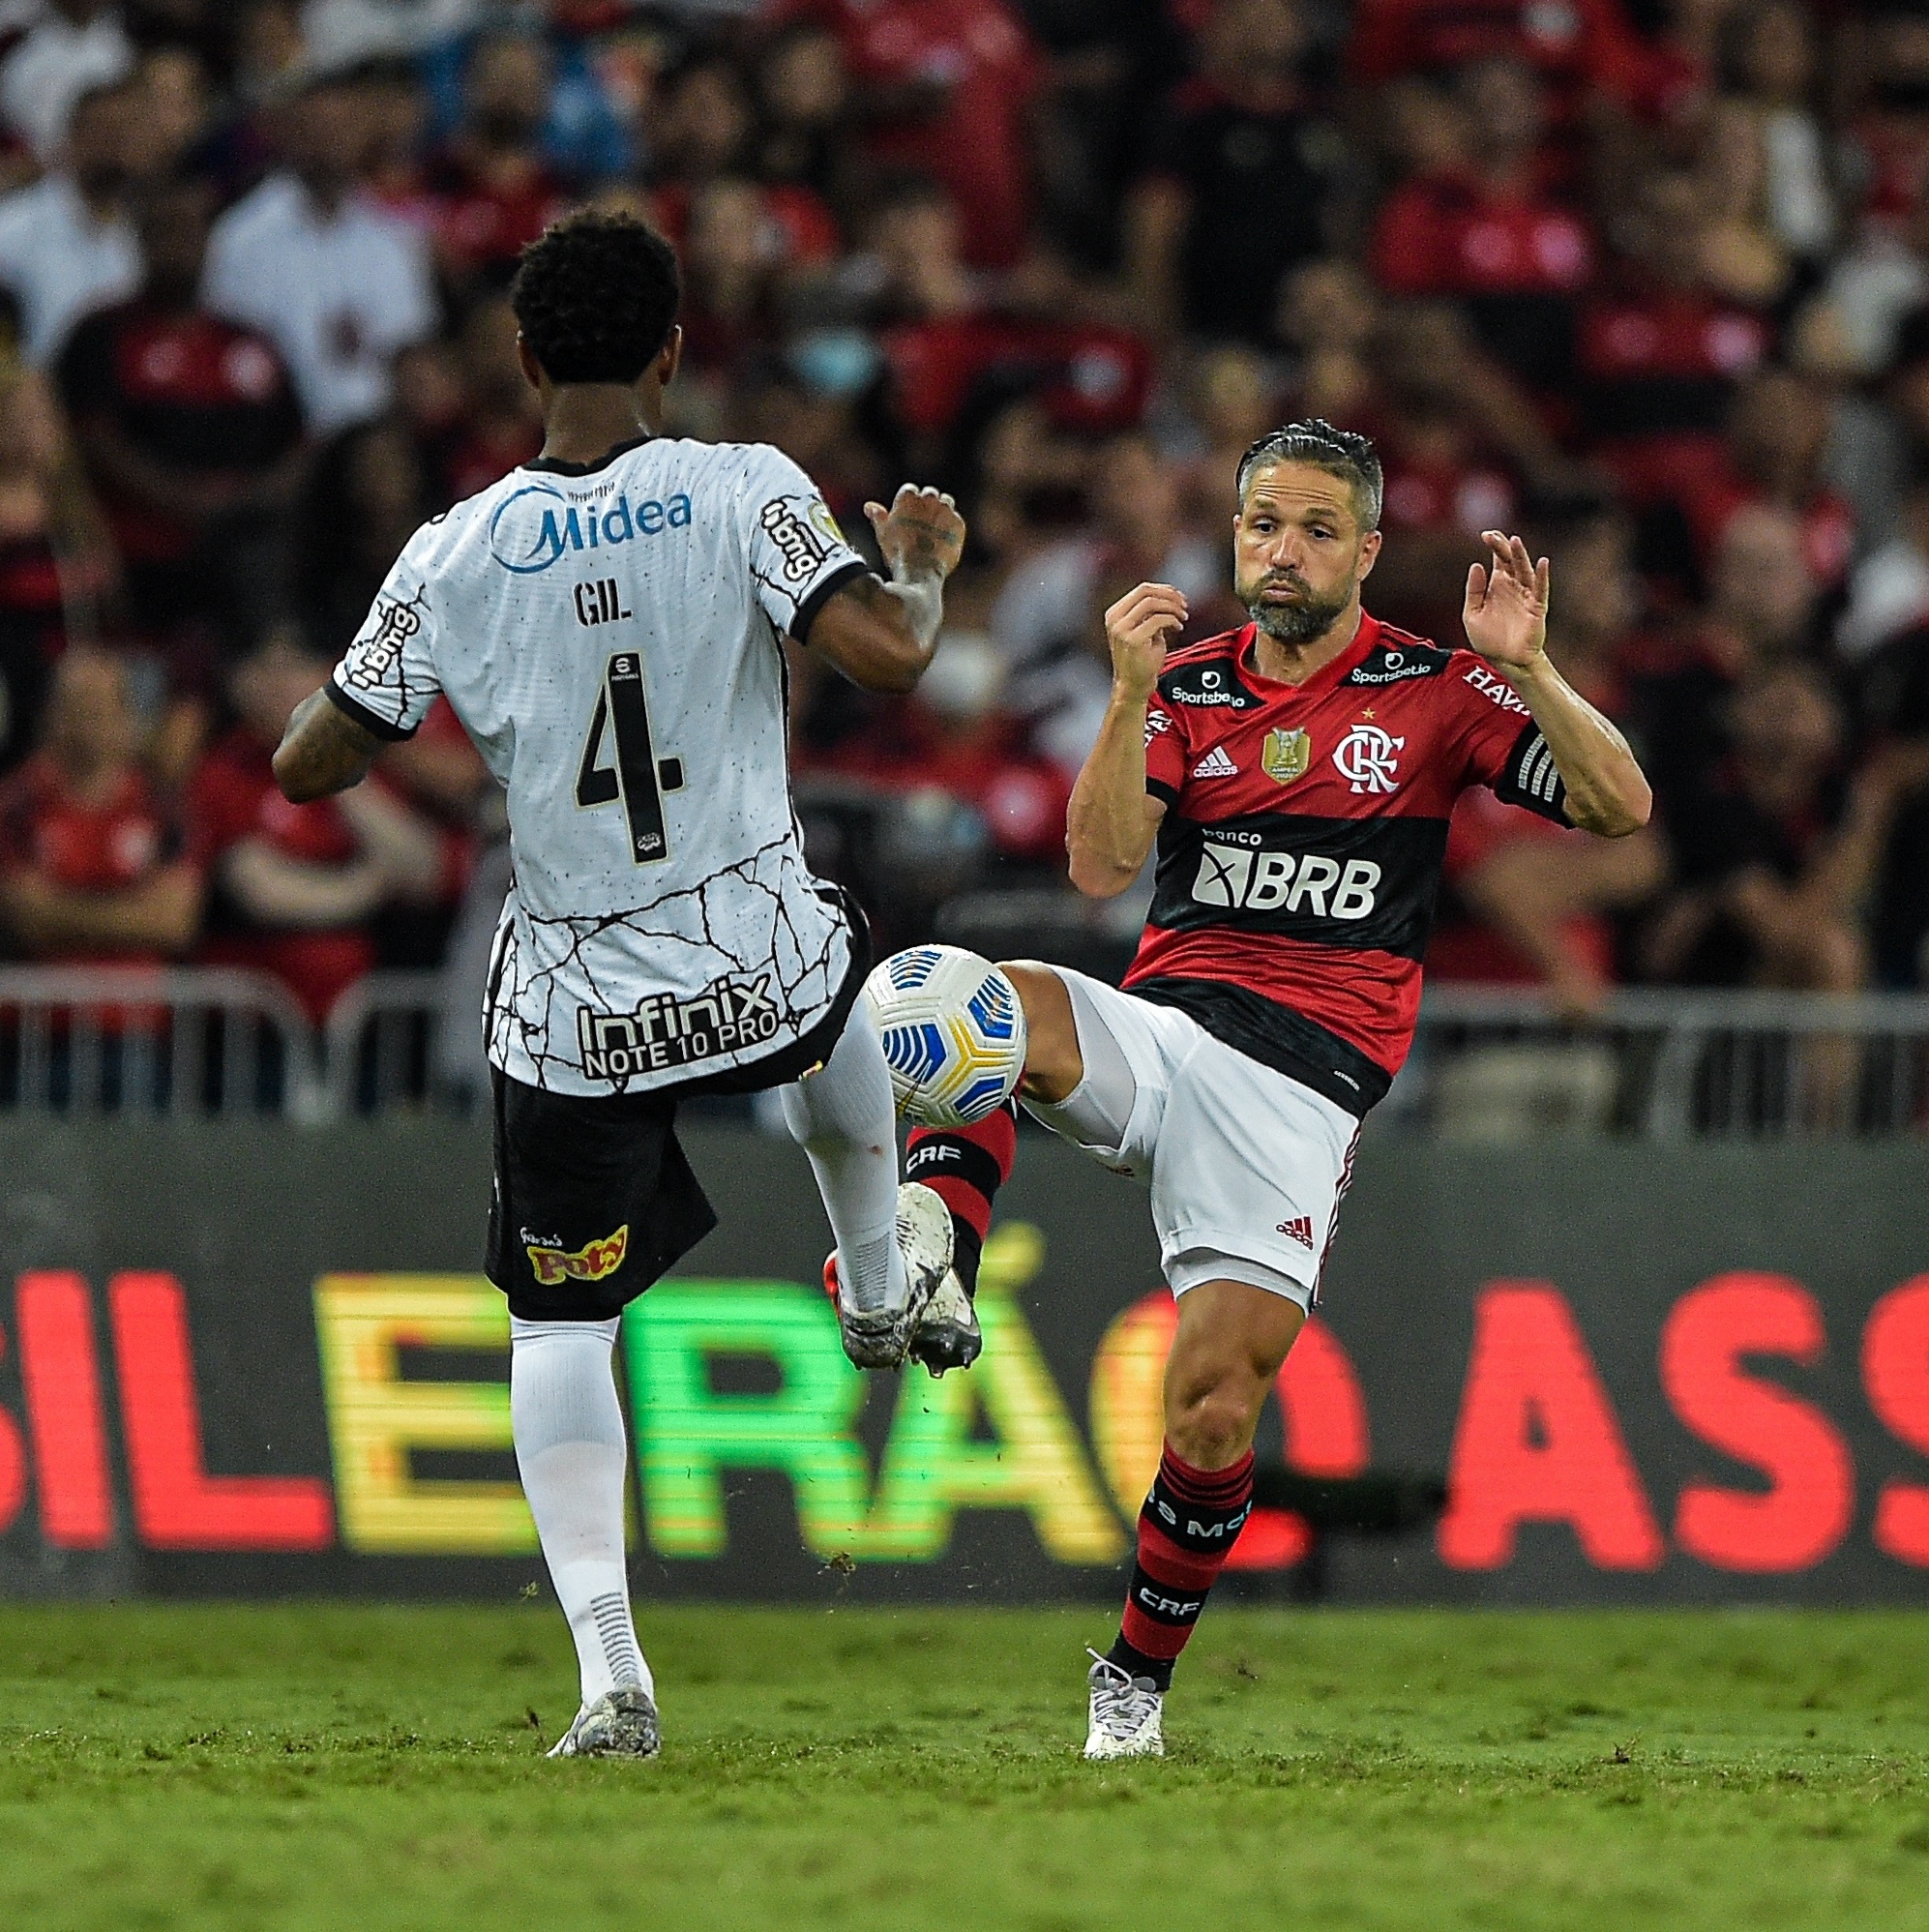 Brasileirão: como foram os últimos jogos entre Corinthians e Flamengo?